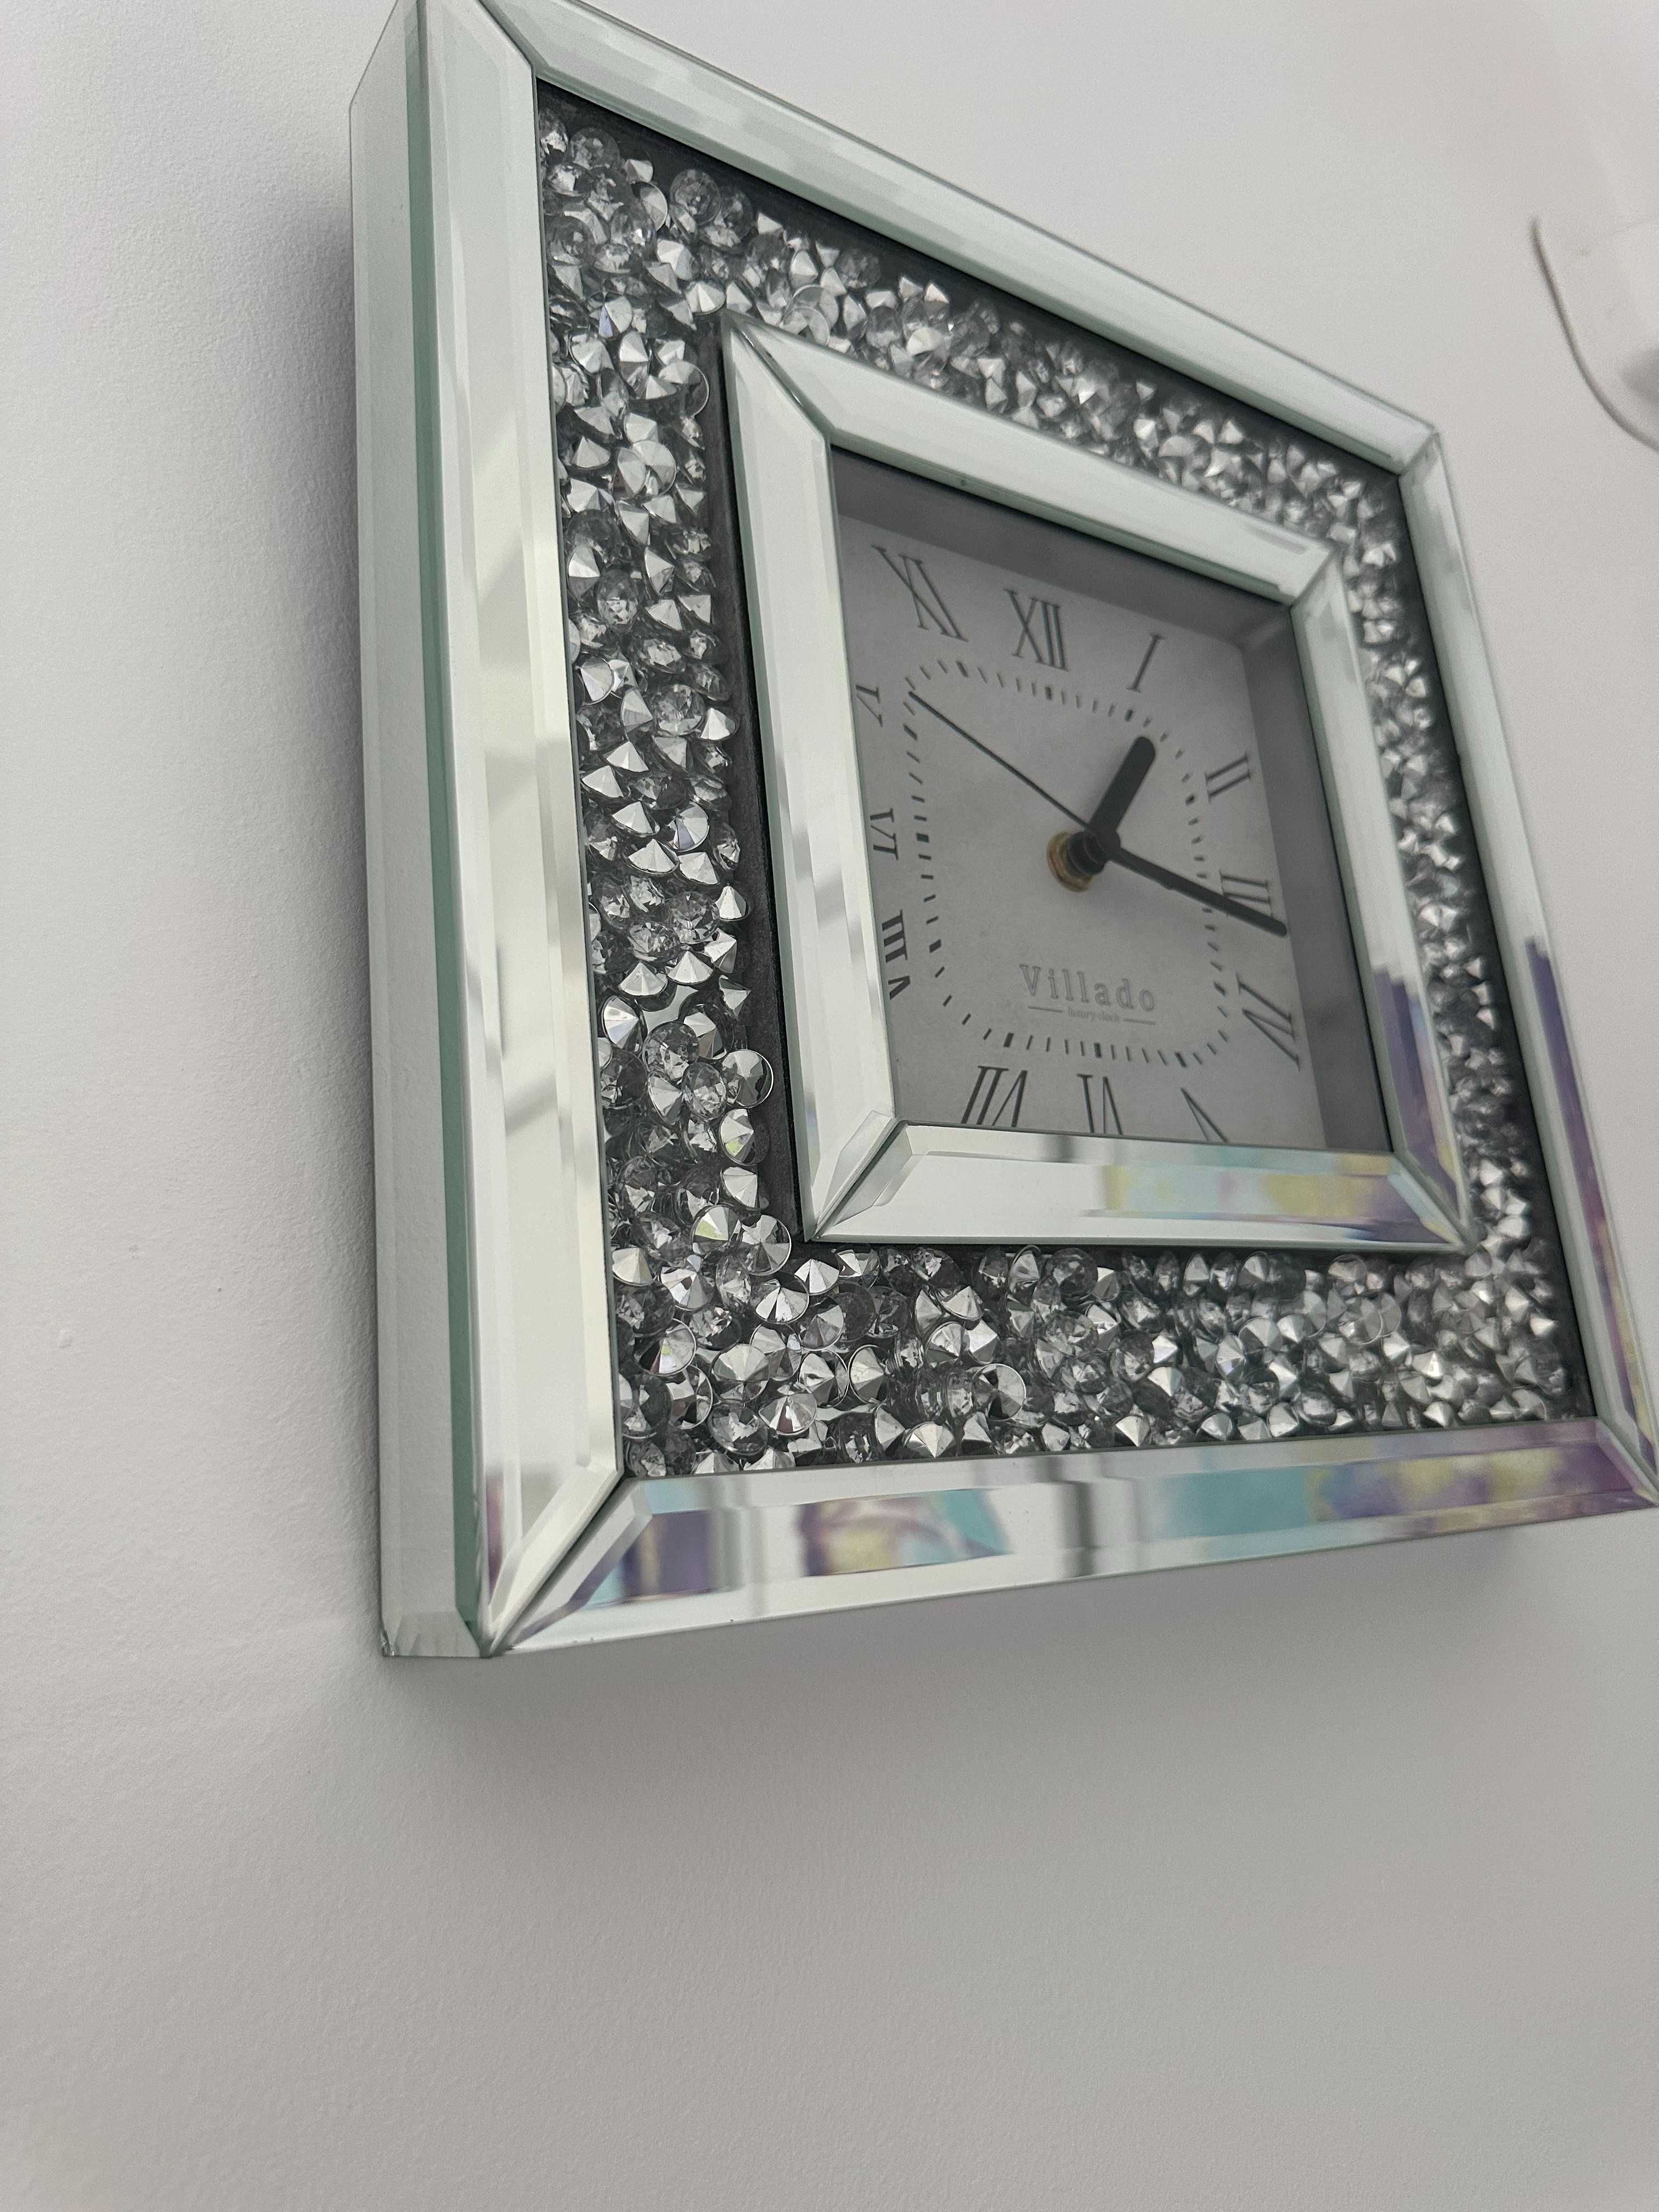 Lustrzany zegar ścienny z kryształkami marki Villado